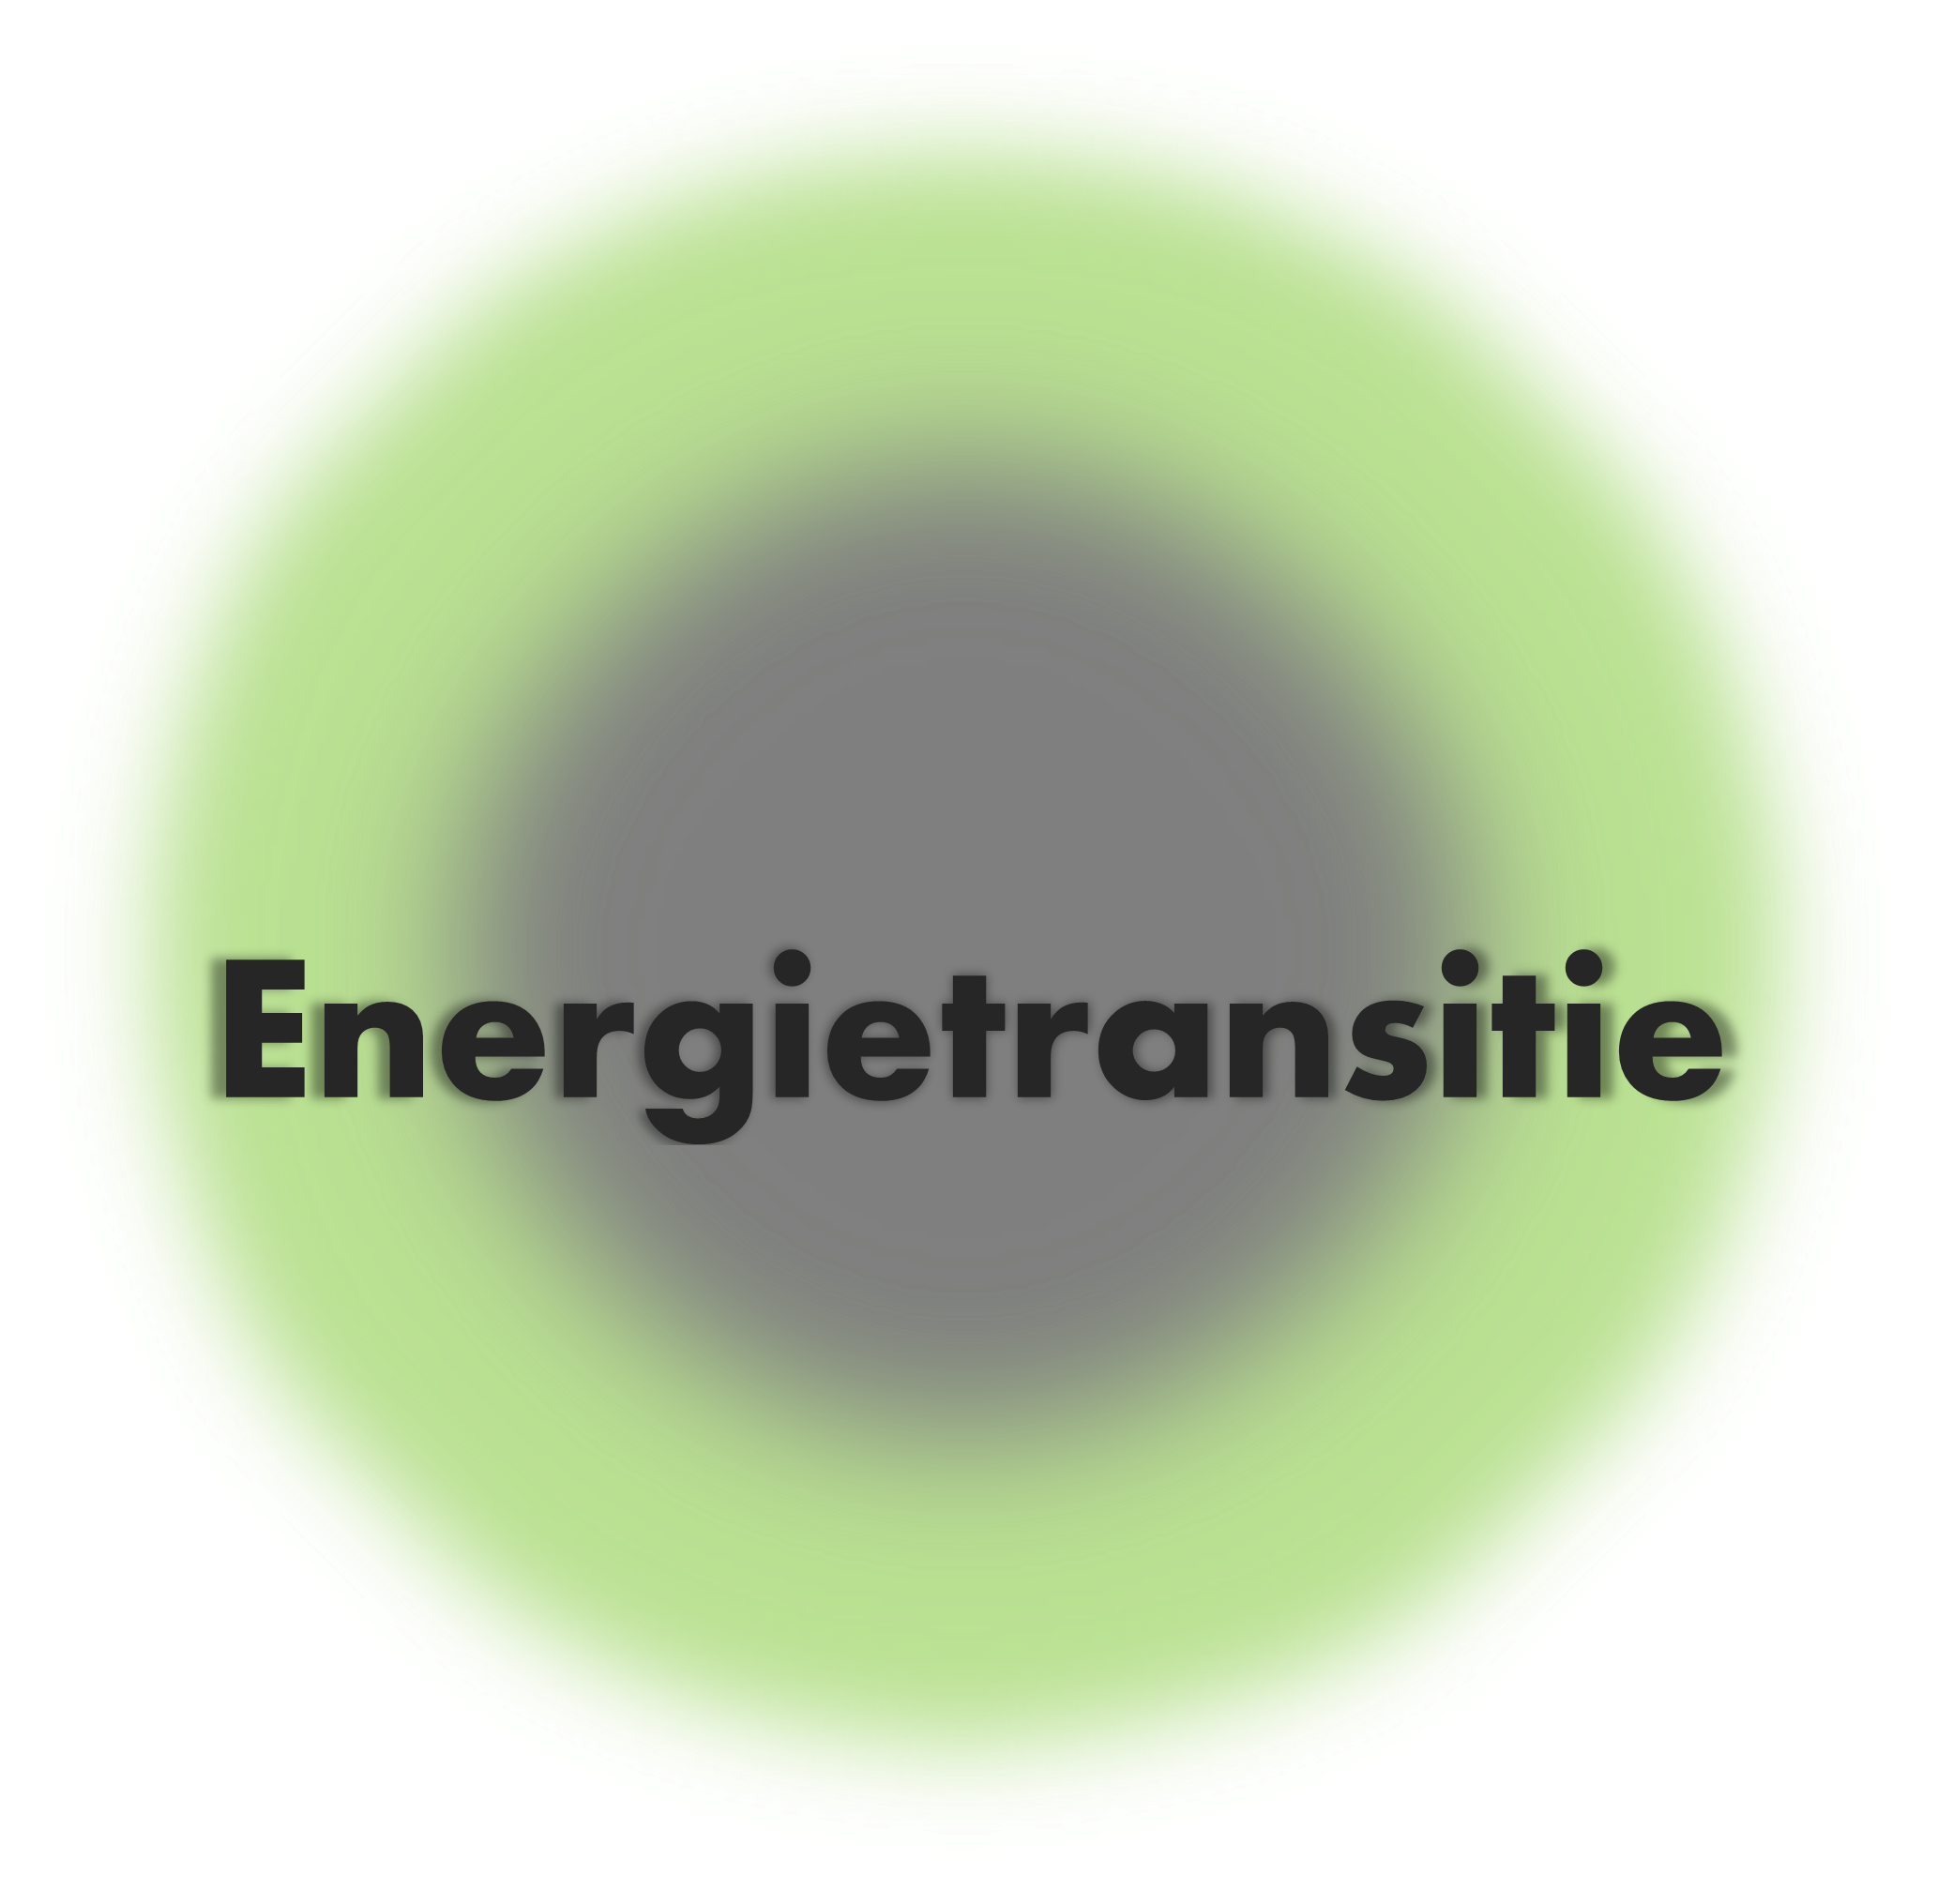 grijze cirkel die naar buiten toe groen uitloopt. daaroverheen het woord Energietransitie